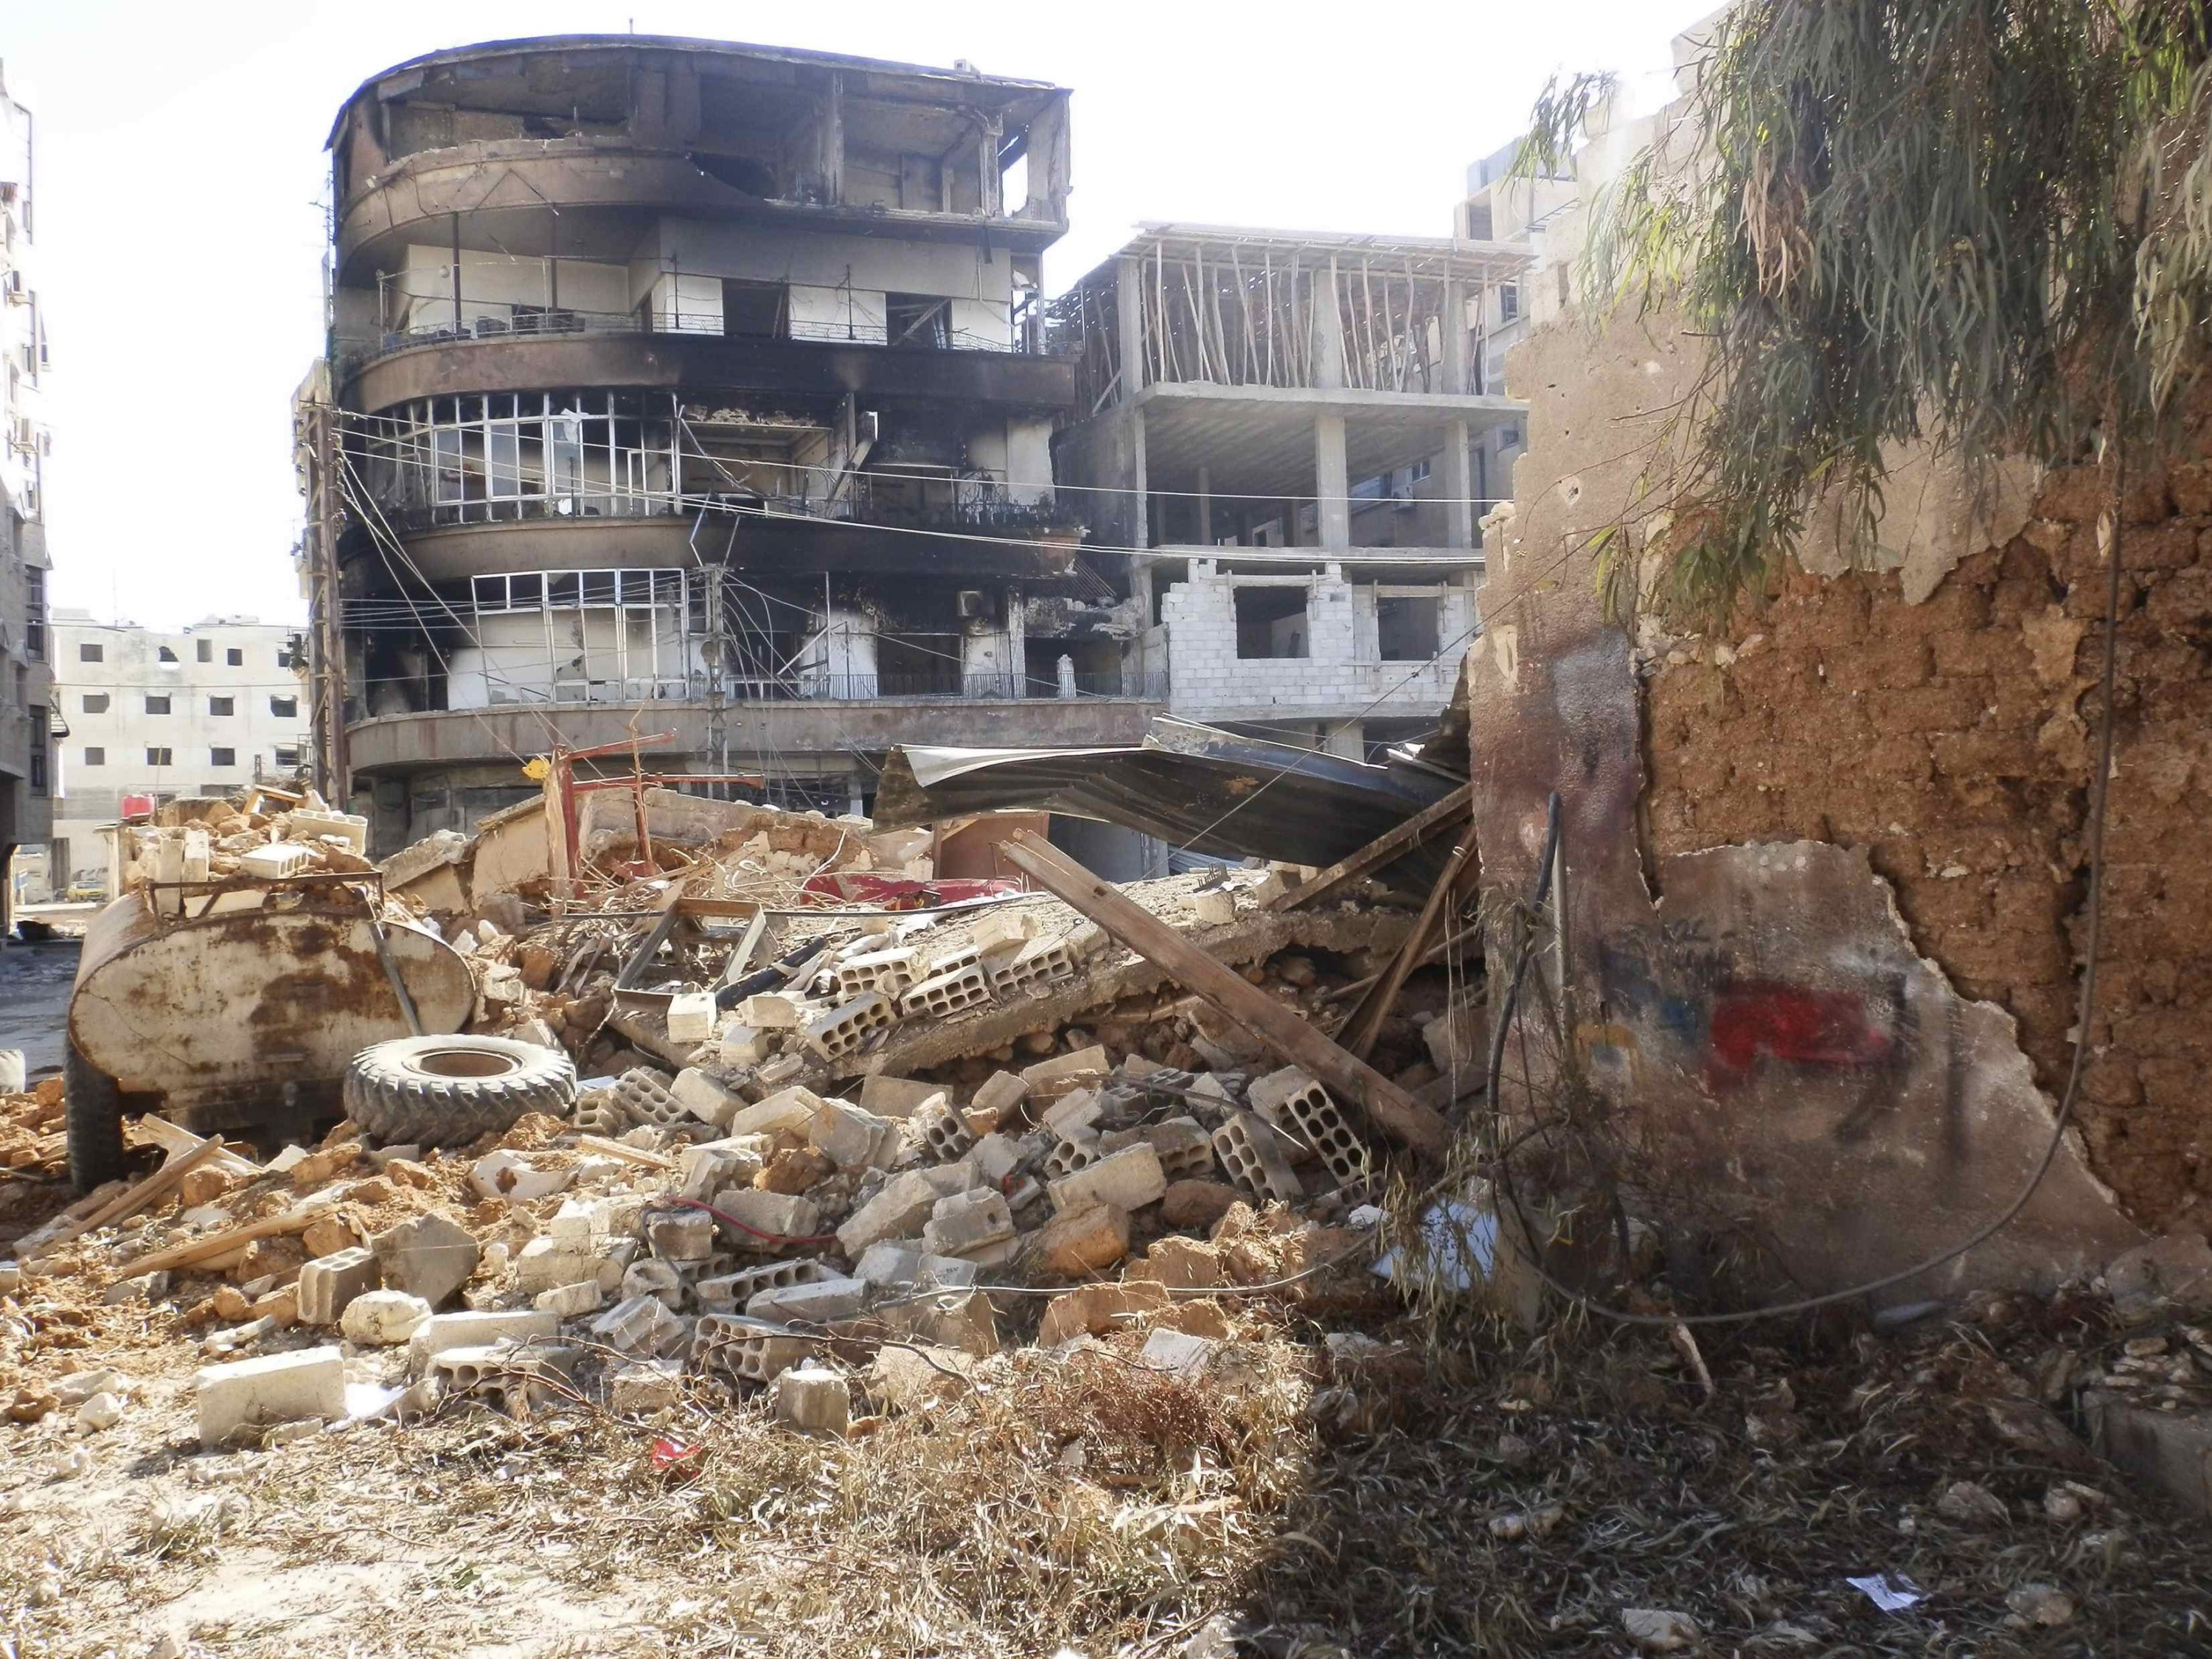 Syrians recall Daraya massacre that killed more than 500 | Daily Sabah